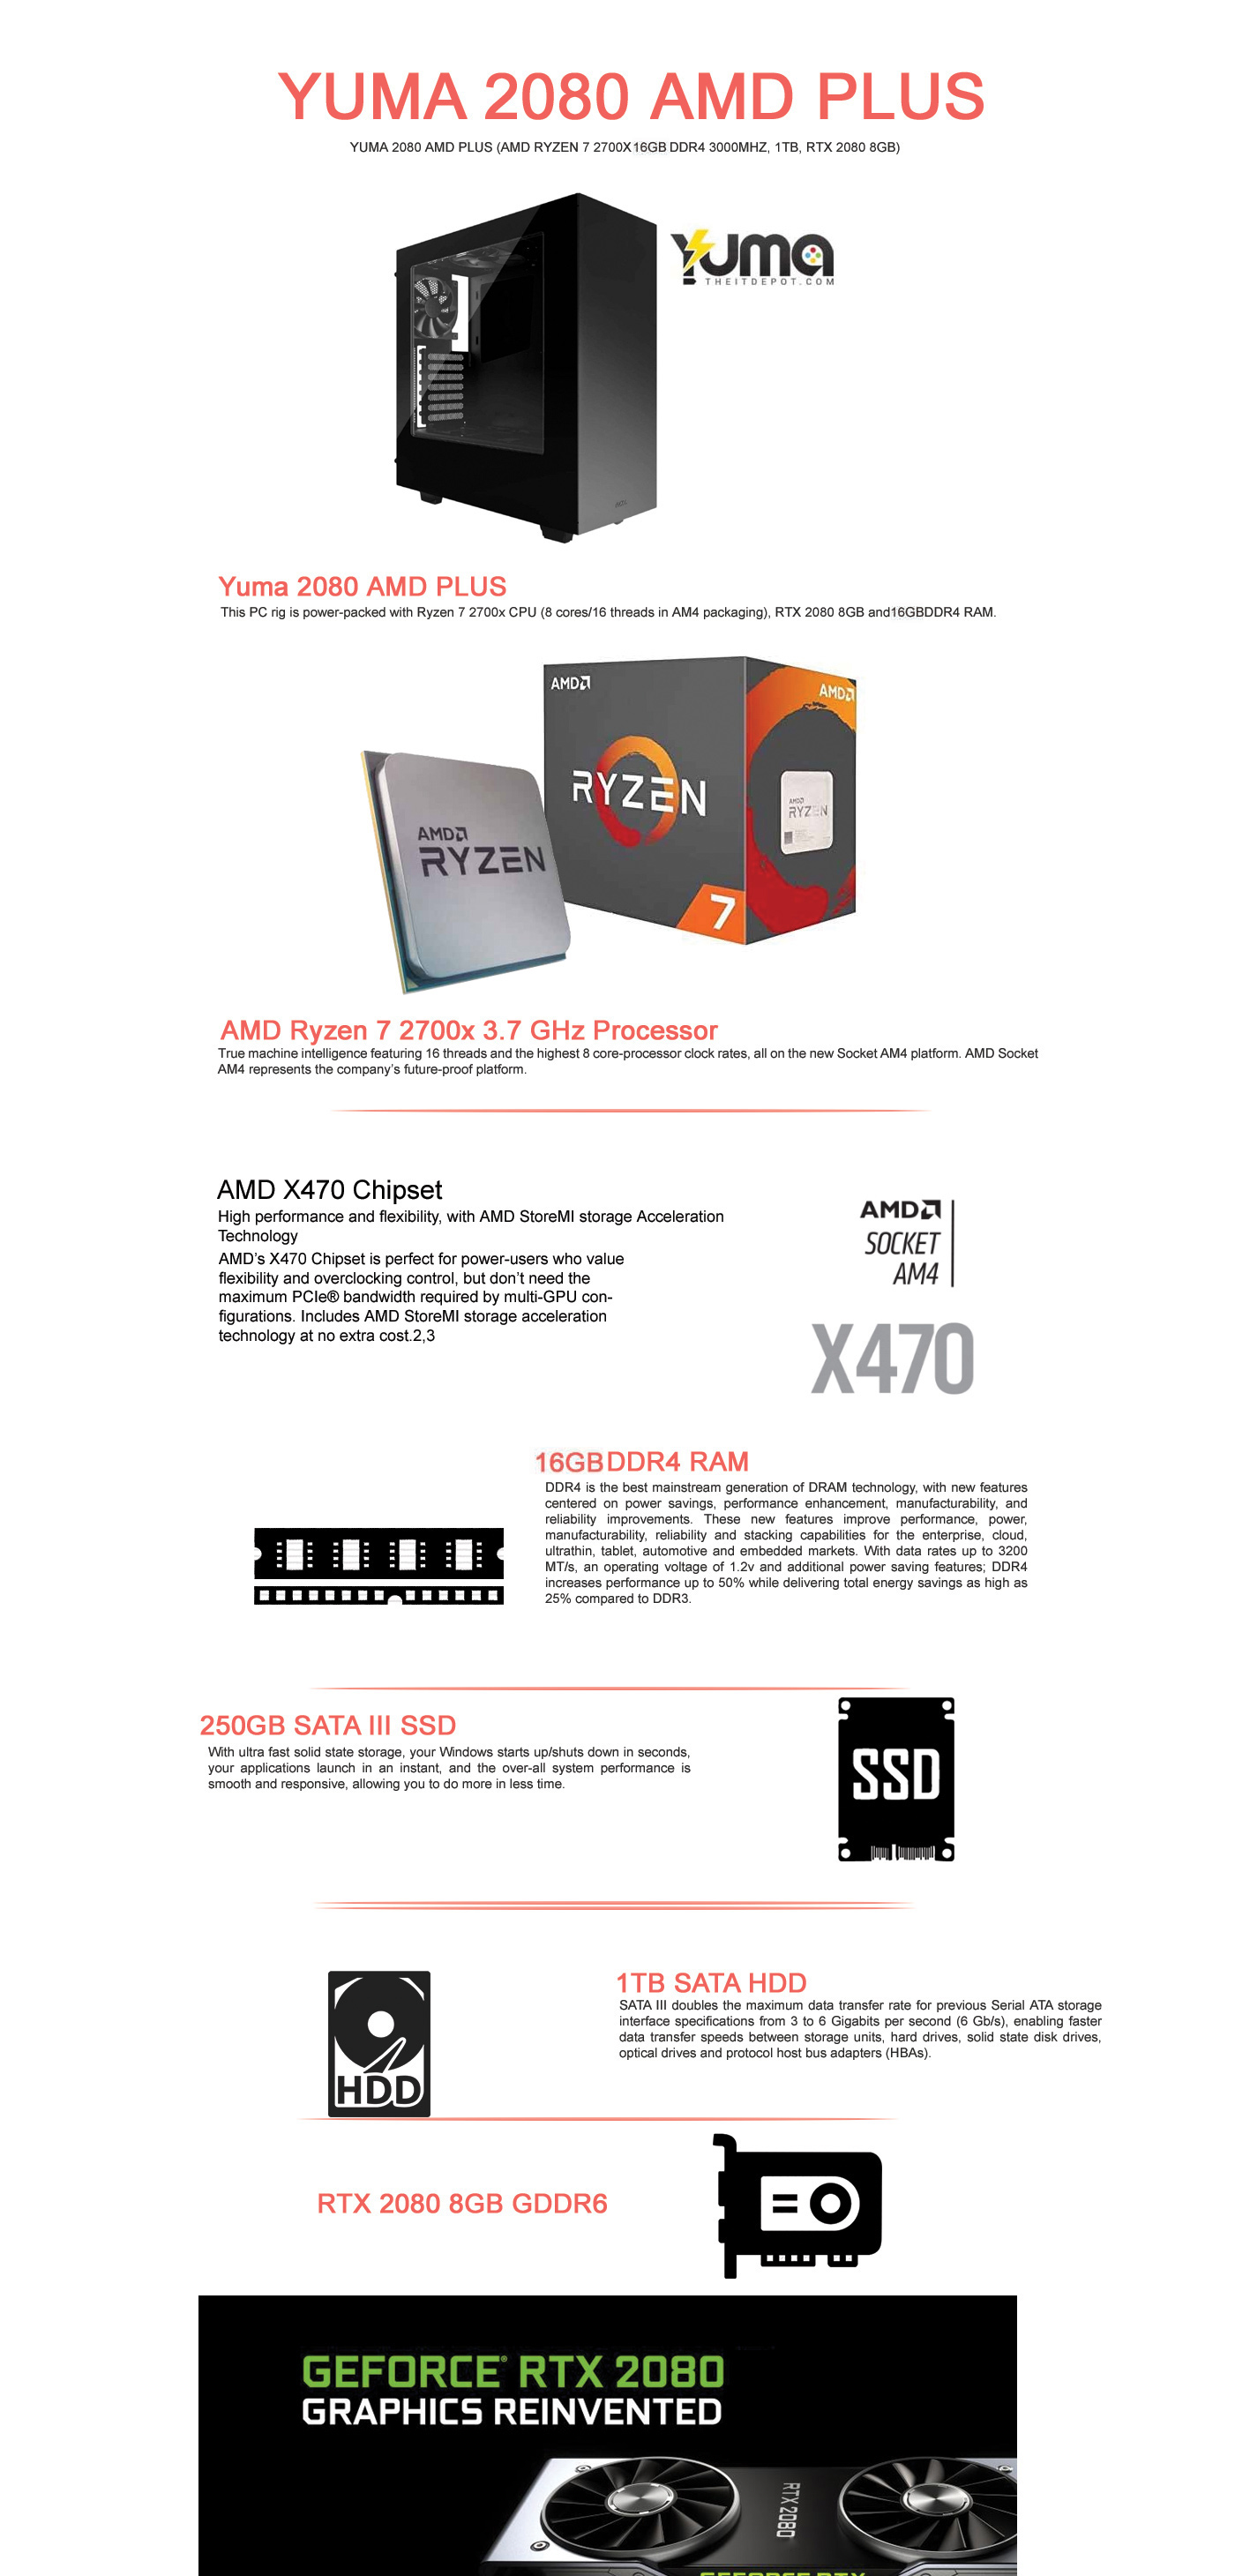  Buy Online Yuma 2080 AMD Plus (AMD Ryzen 7 2700X, 8GB DDR4 3000MHz, 1TB, RTX 2080 8GB)